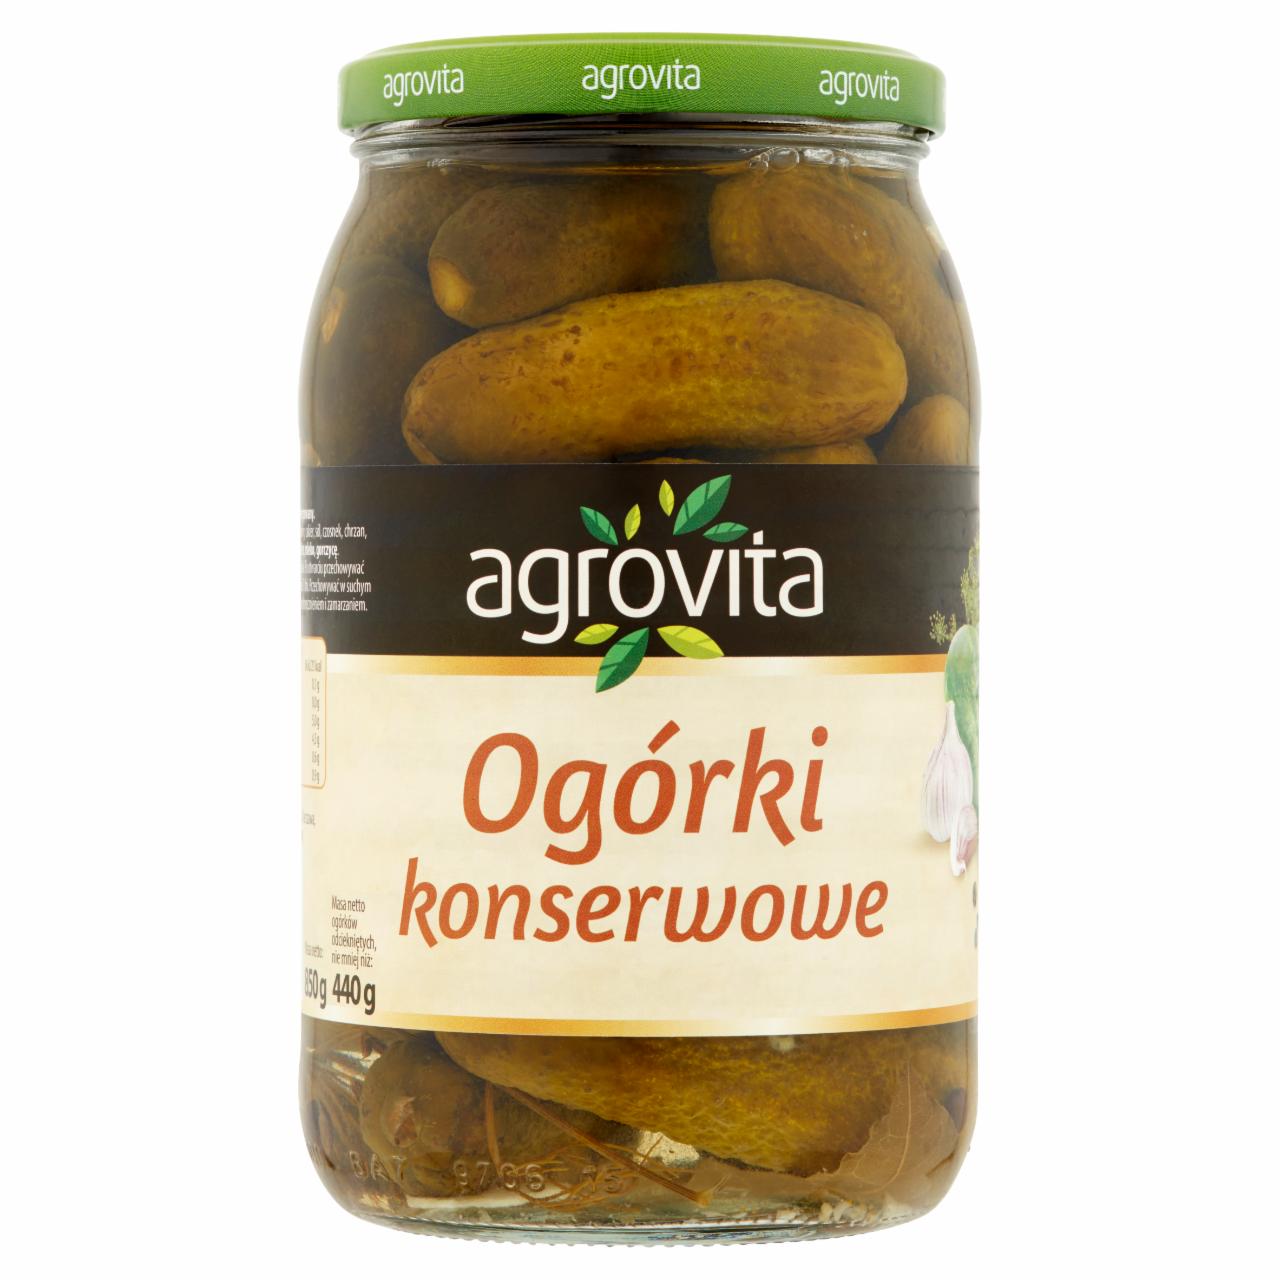 Zdjęcia - Agrovita Ogórki konserwowe 850 g